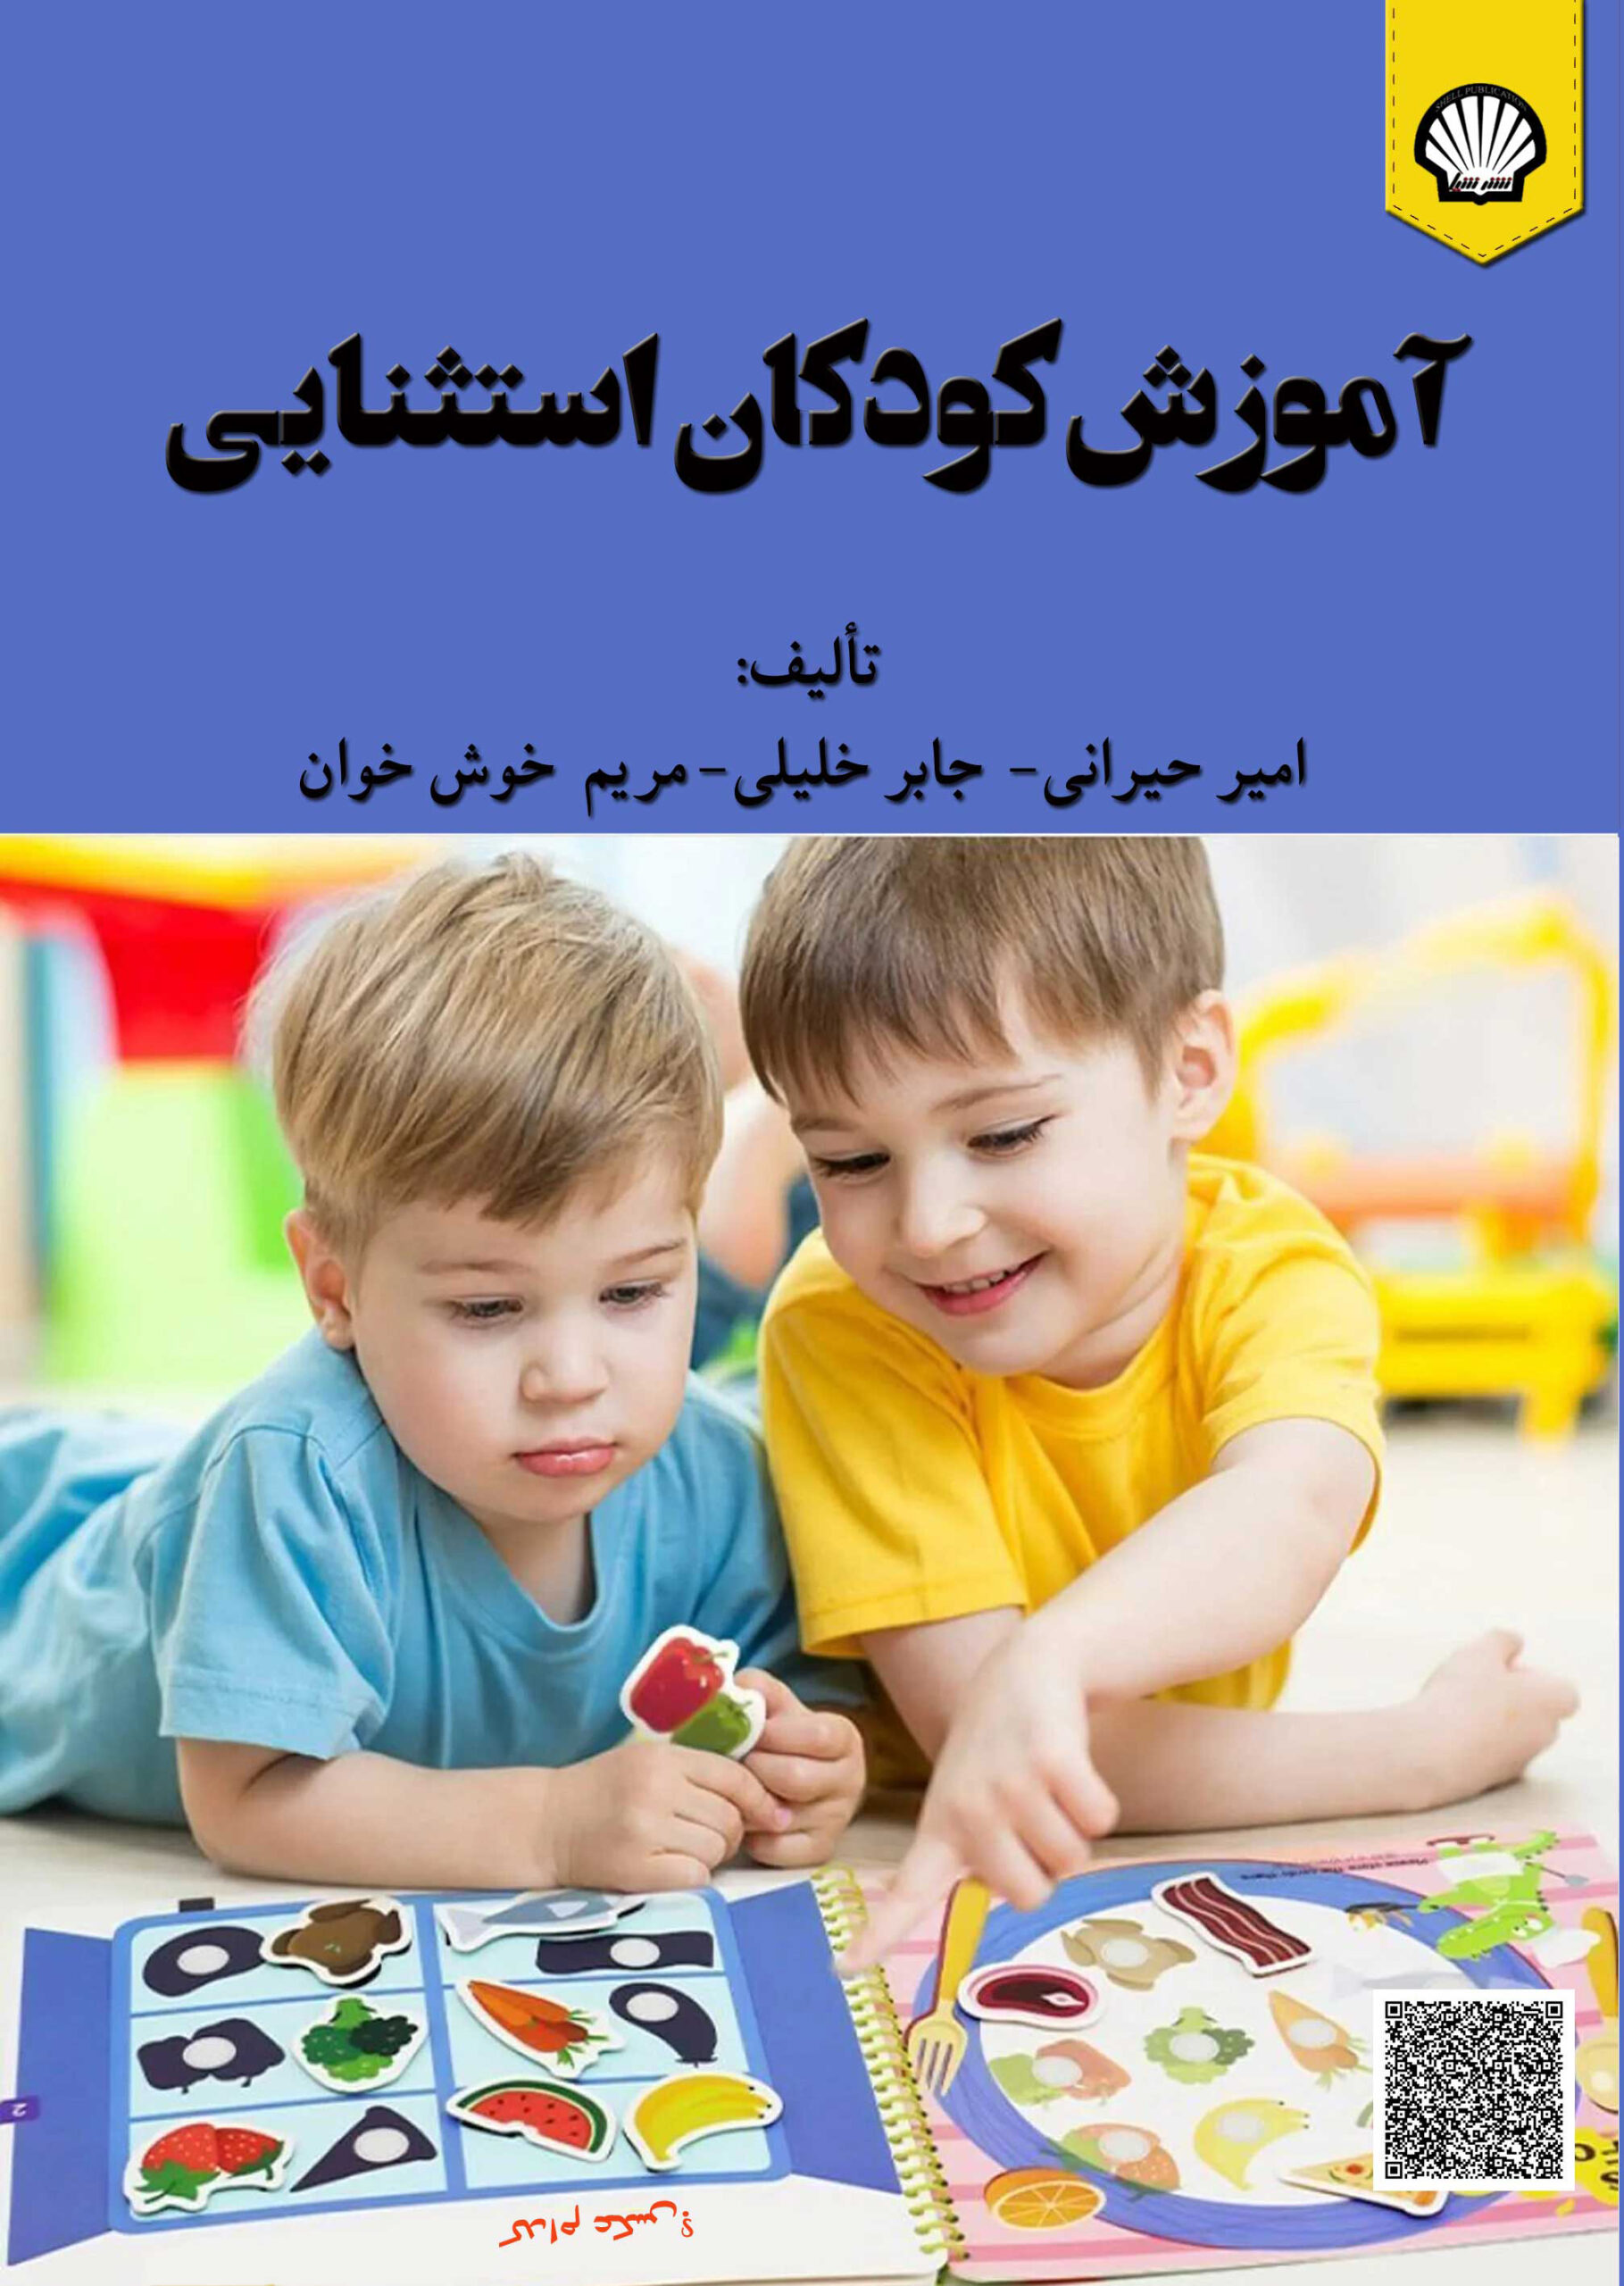 آموزش کودکان استثنایی انتشارات شیل نشر شیل